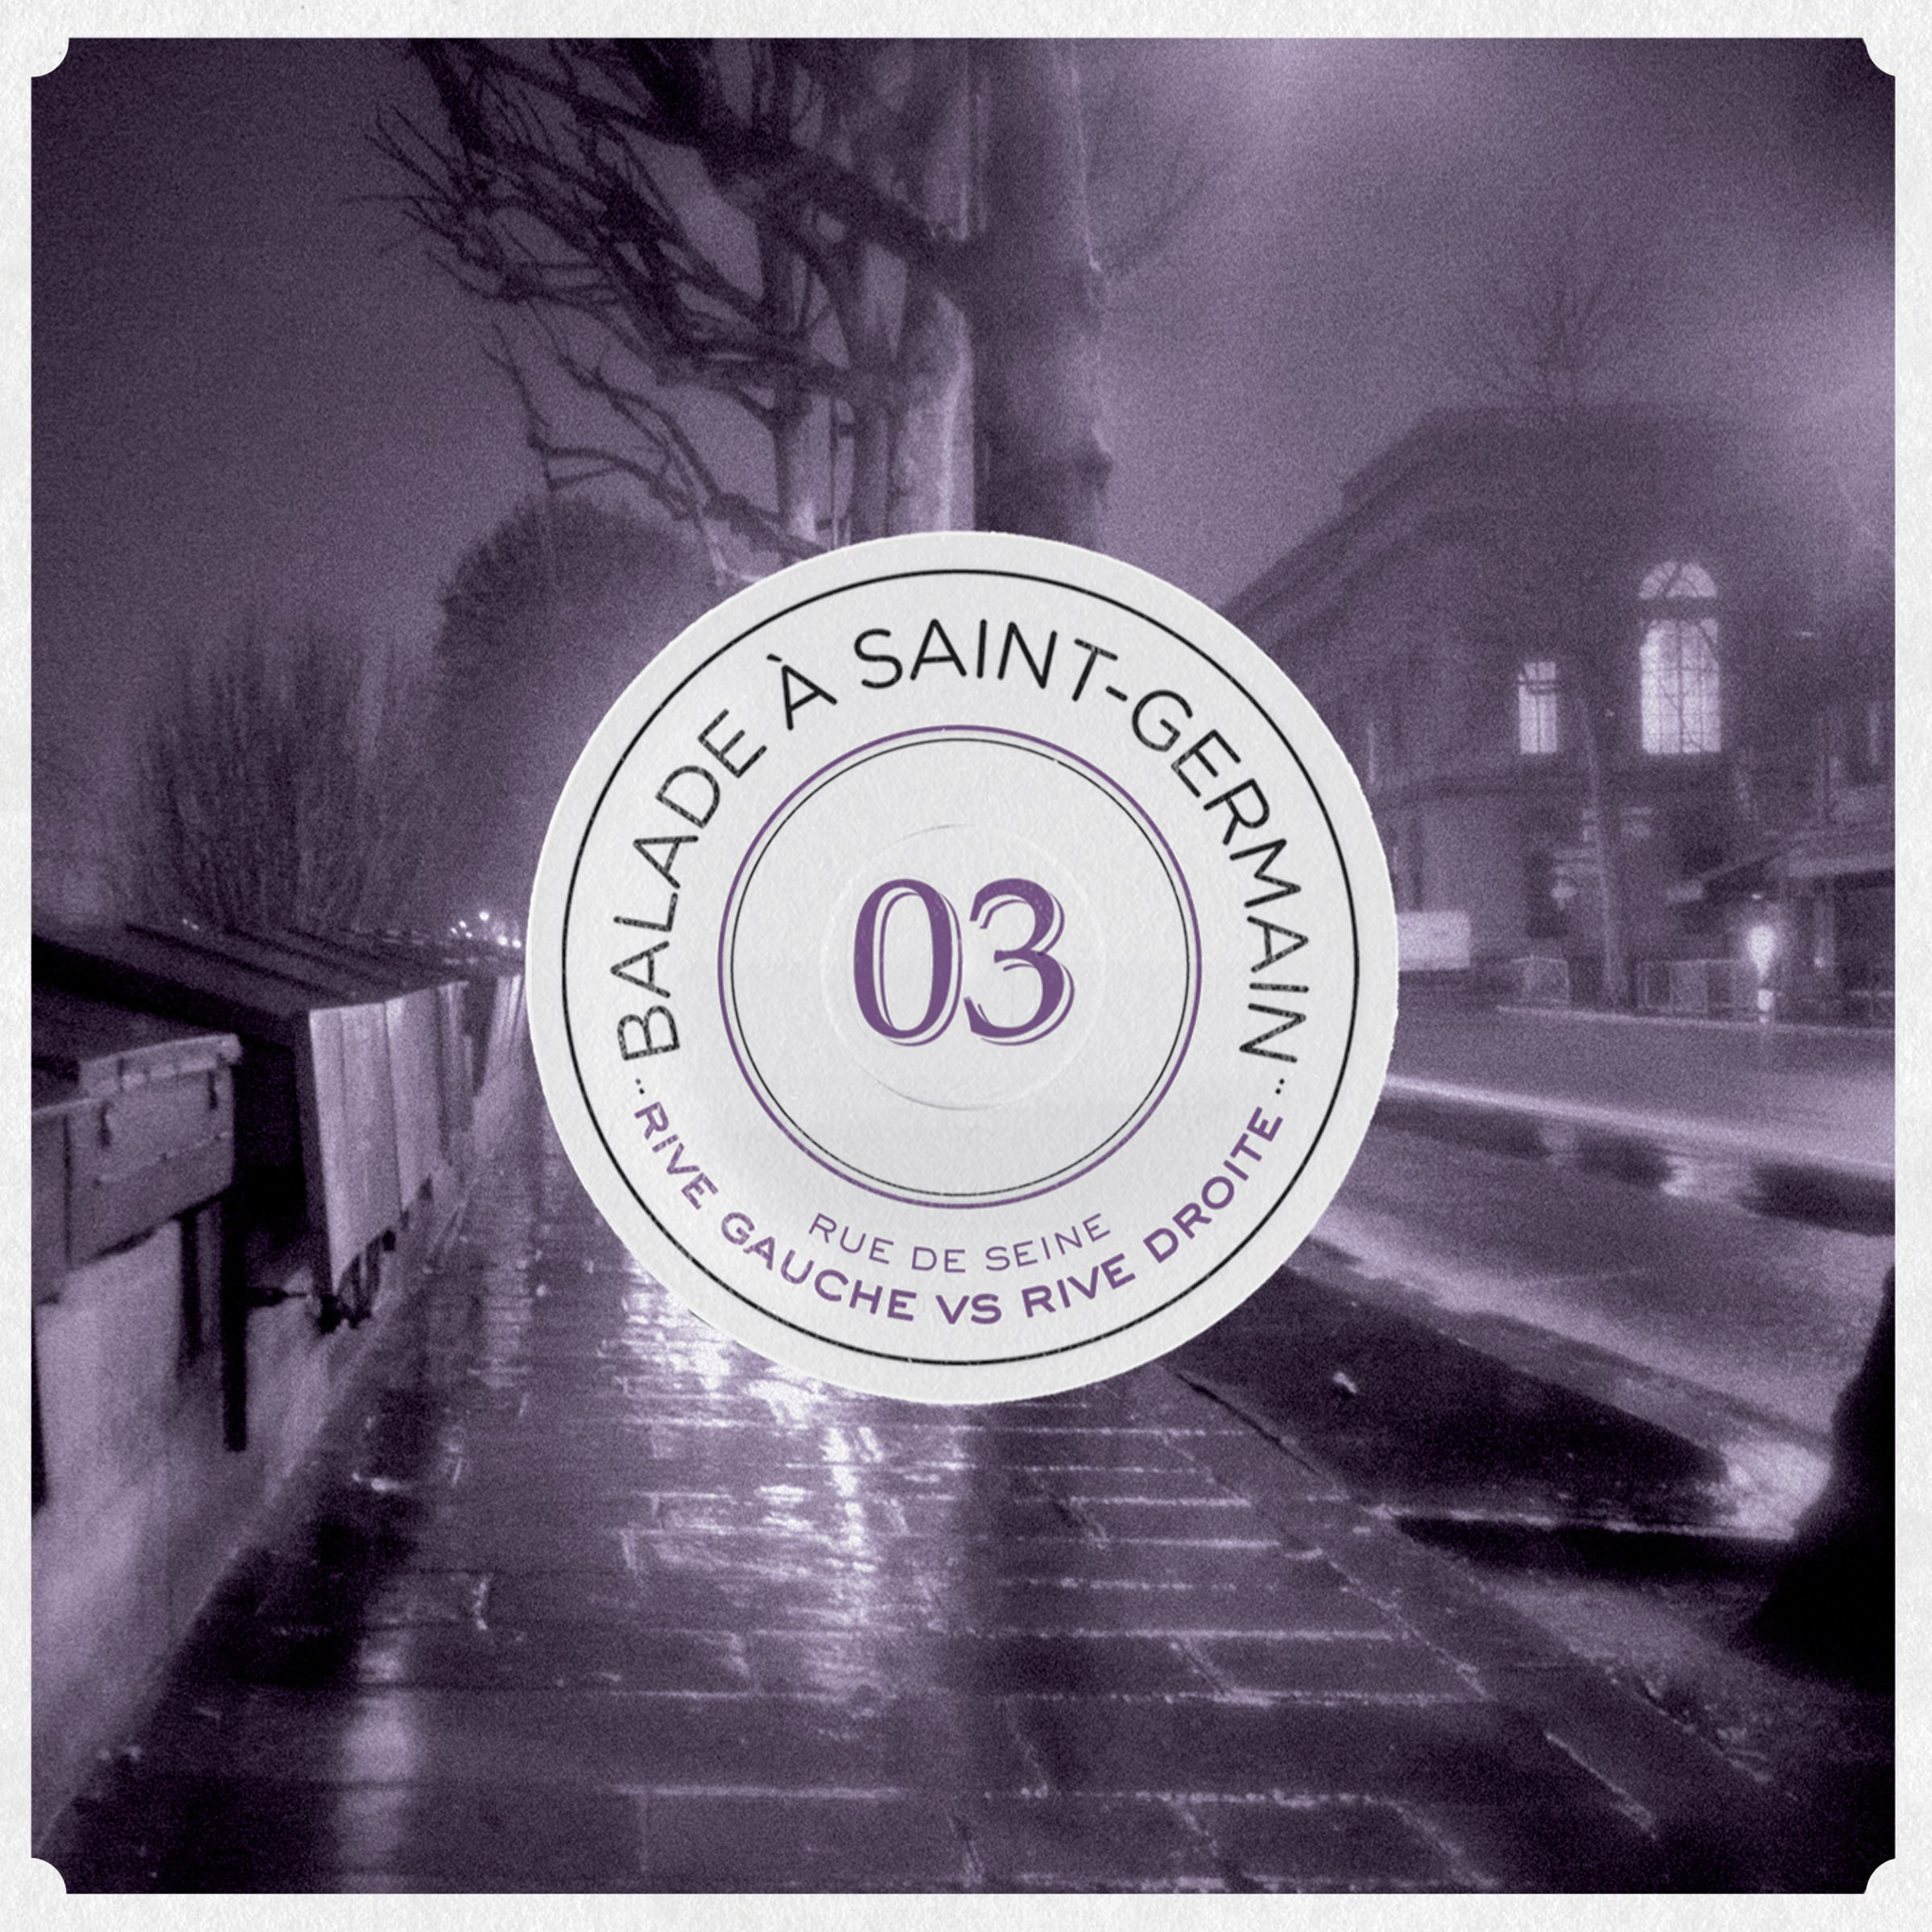 Balade a SaintGermain, vol 3. Rue de Seine: Rive Gauche Vs Rive Droite